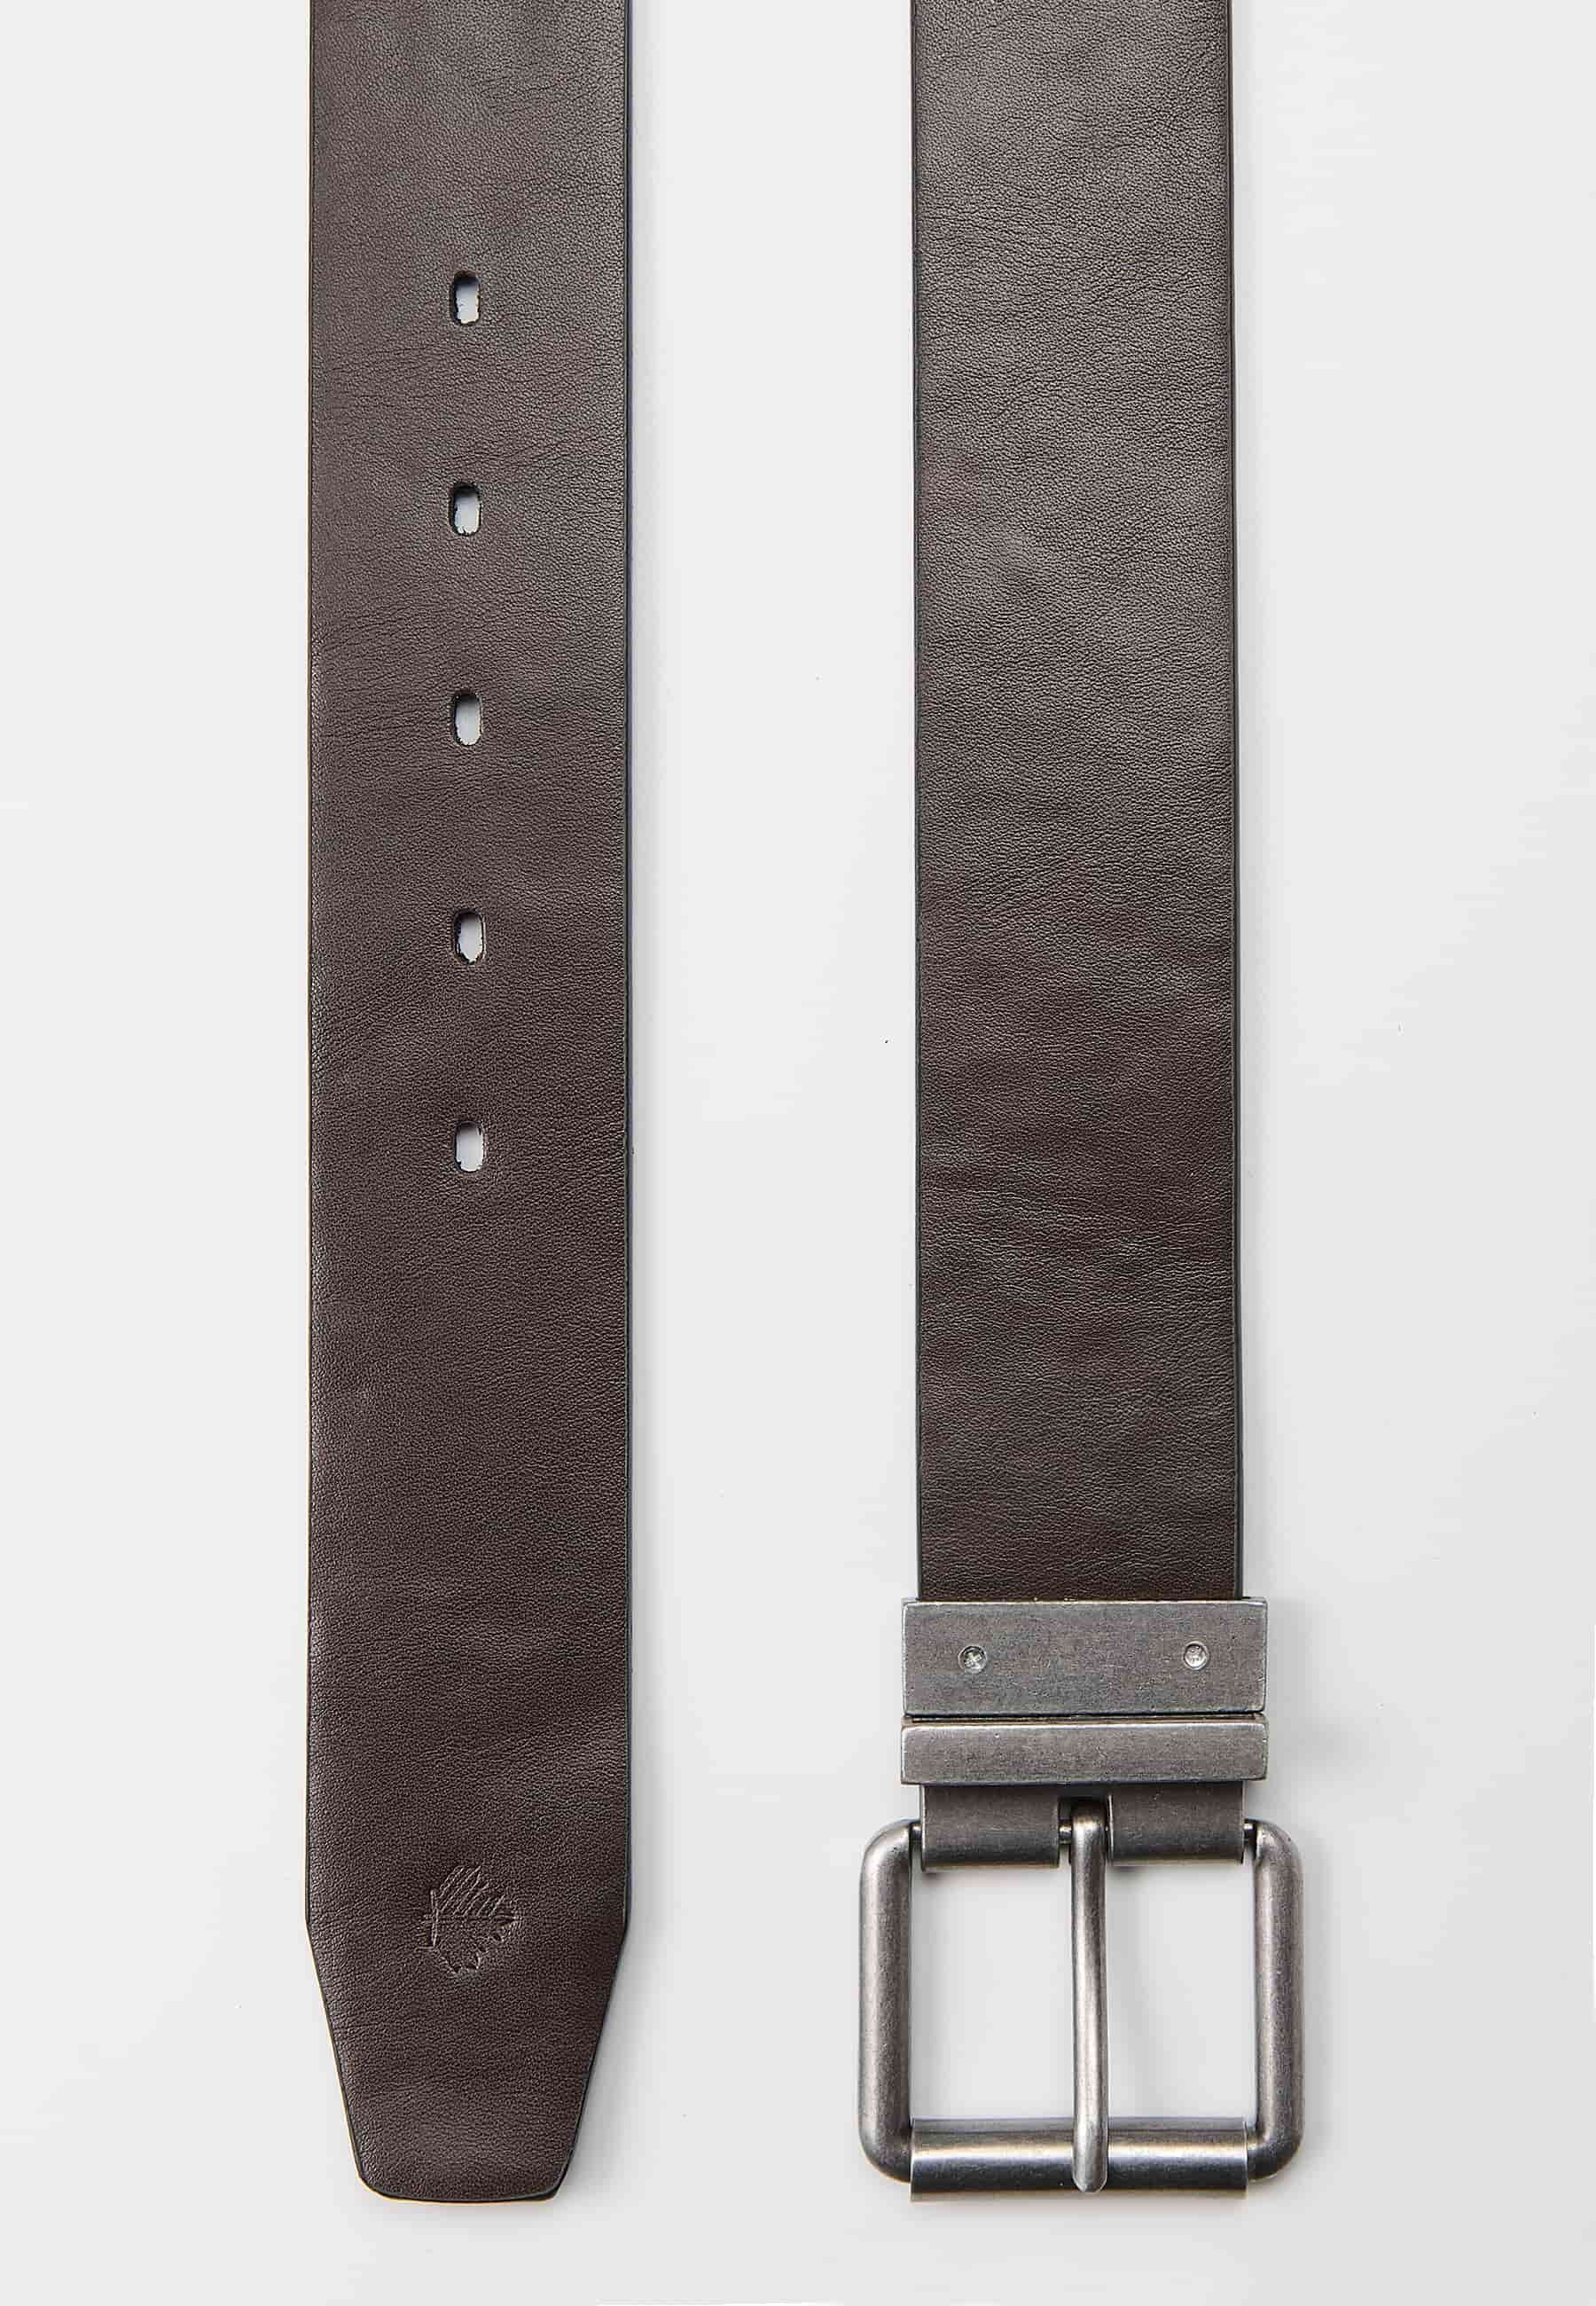 Cinturó reversible amb un dels costats de pell. Tancament amb sivella metàl·lica i passador color negre i marró per a Home